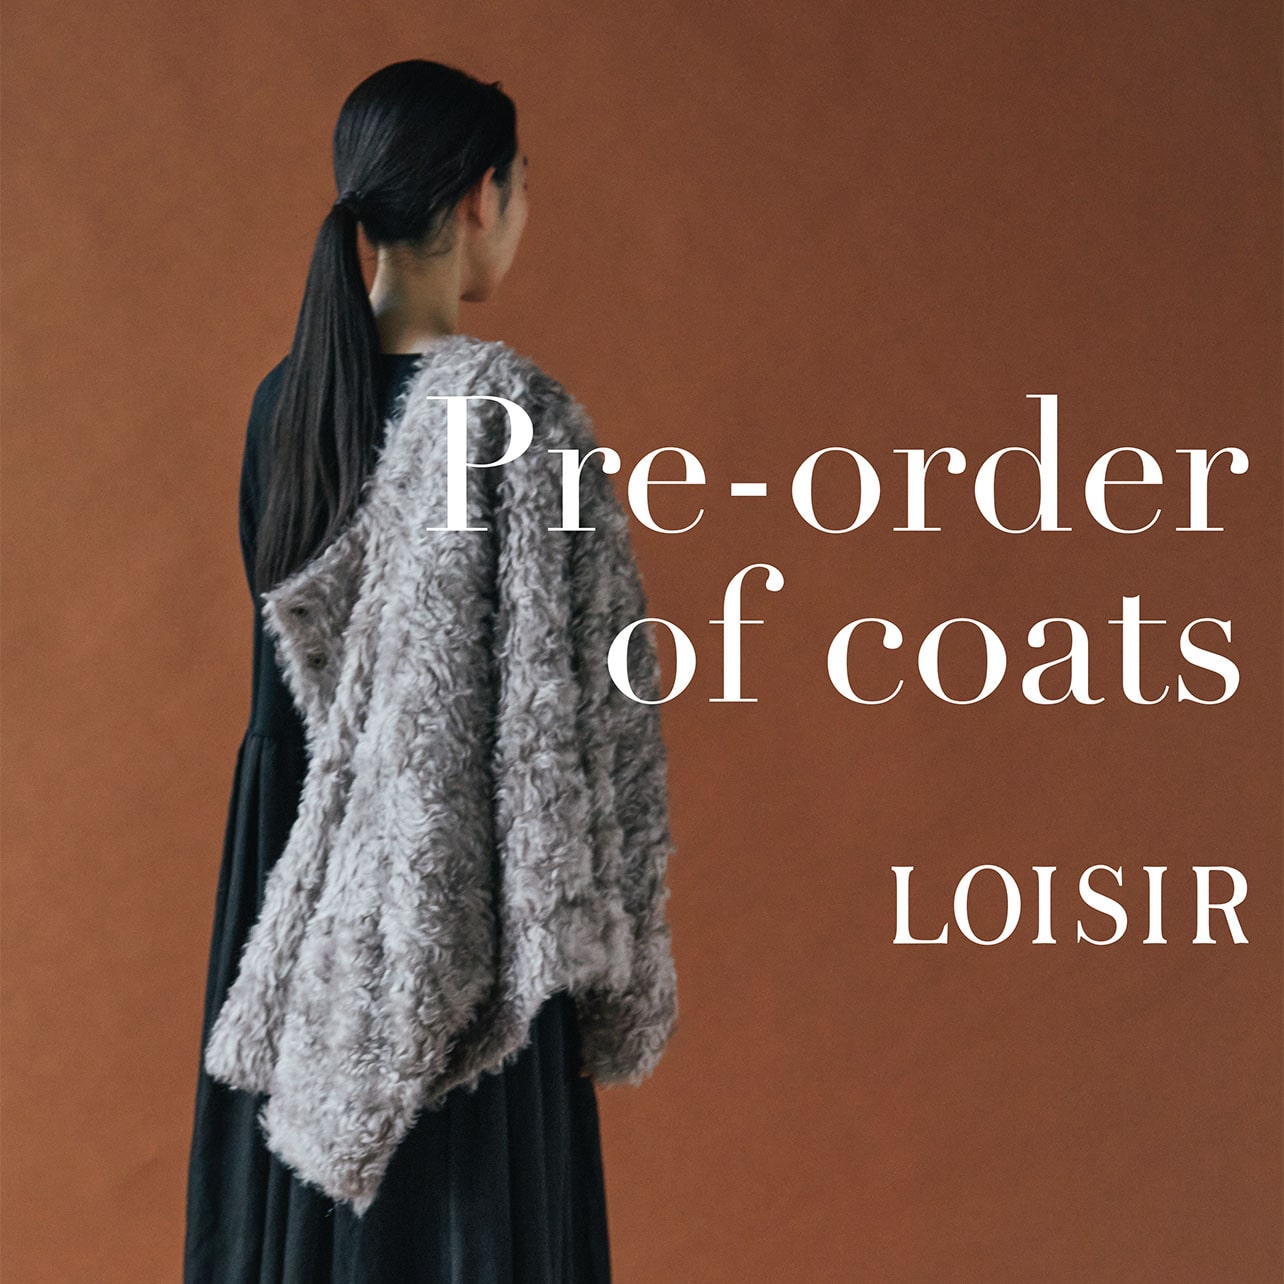 Pre-order of coats